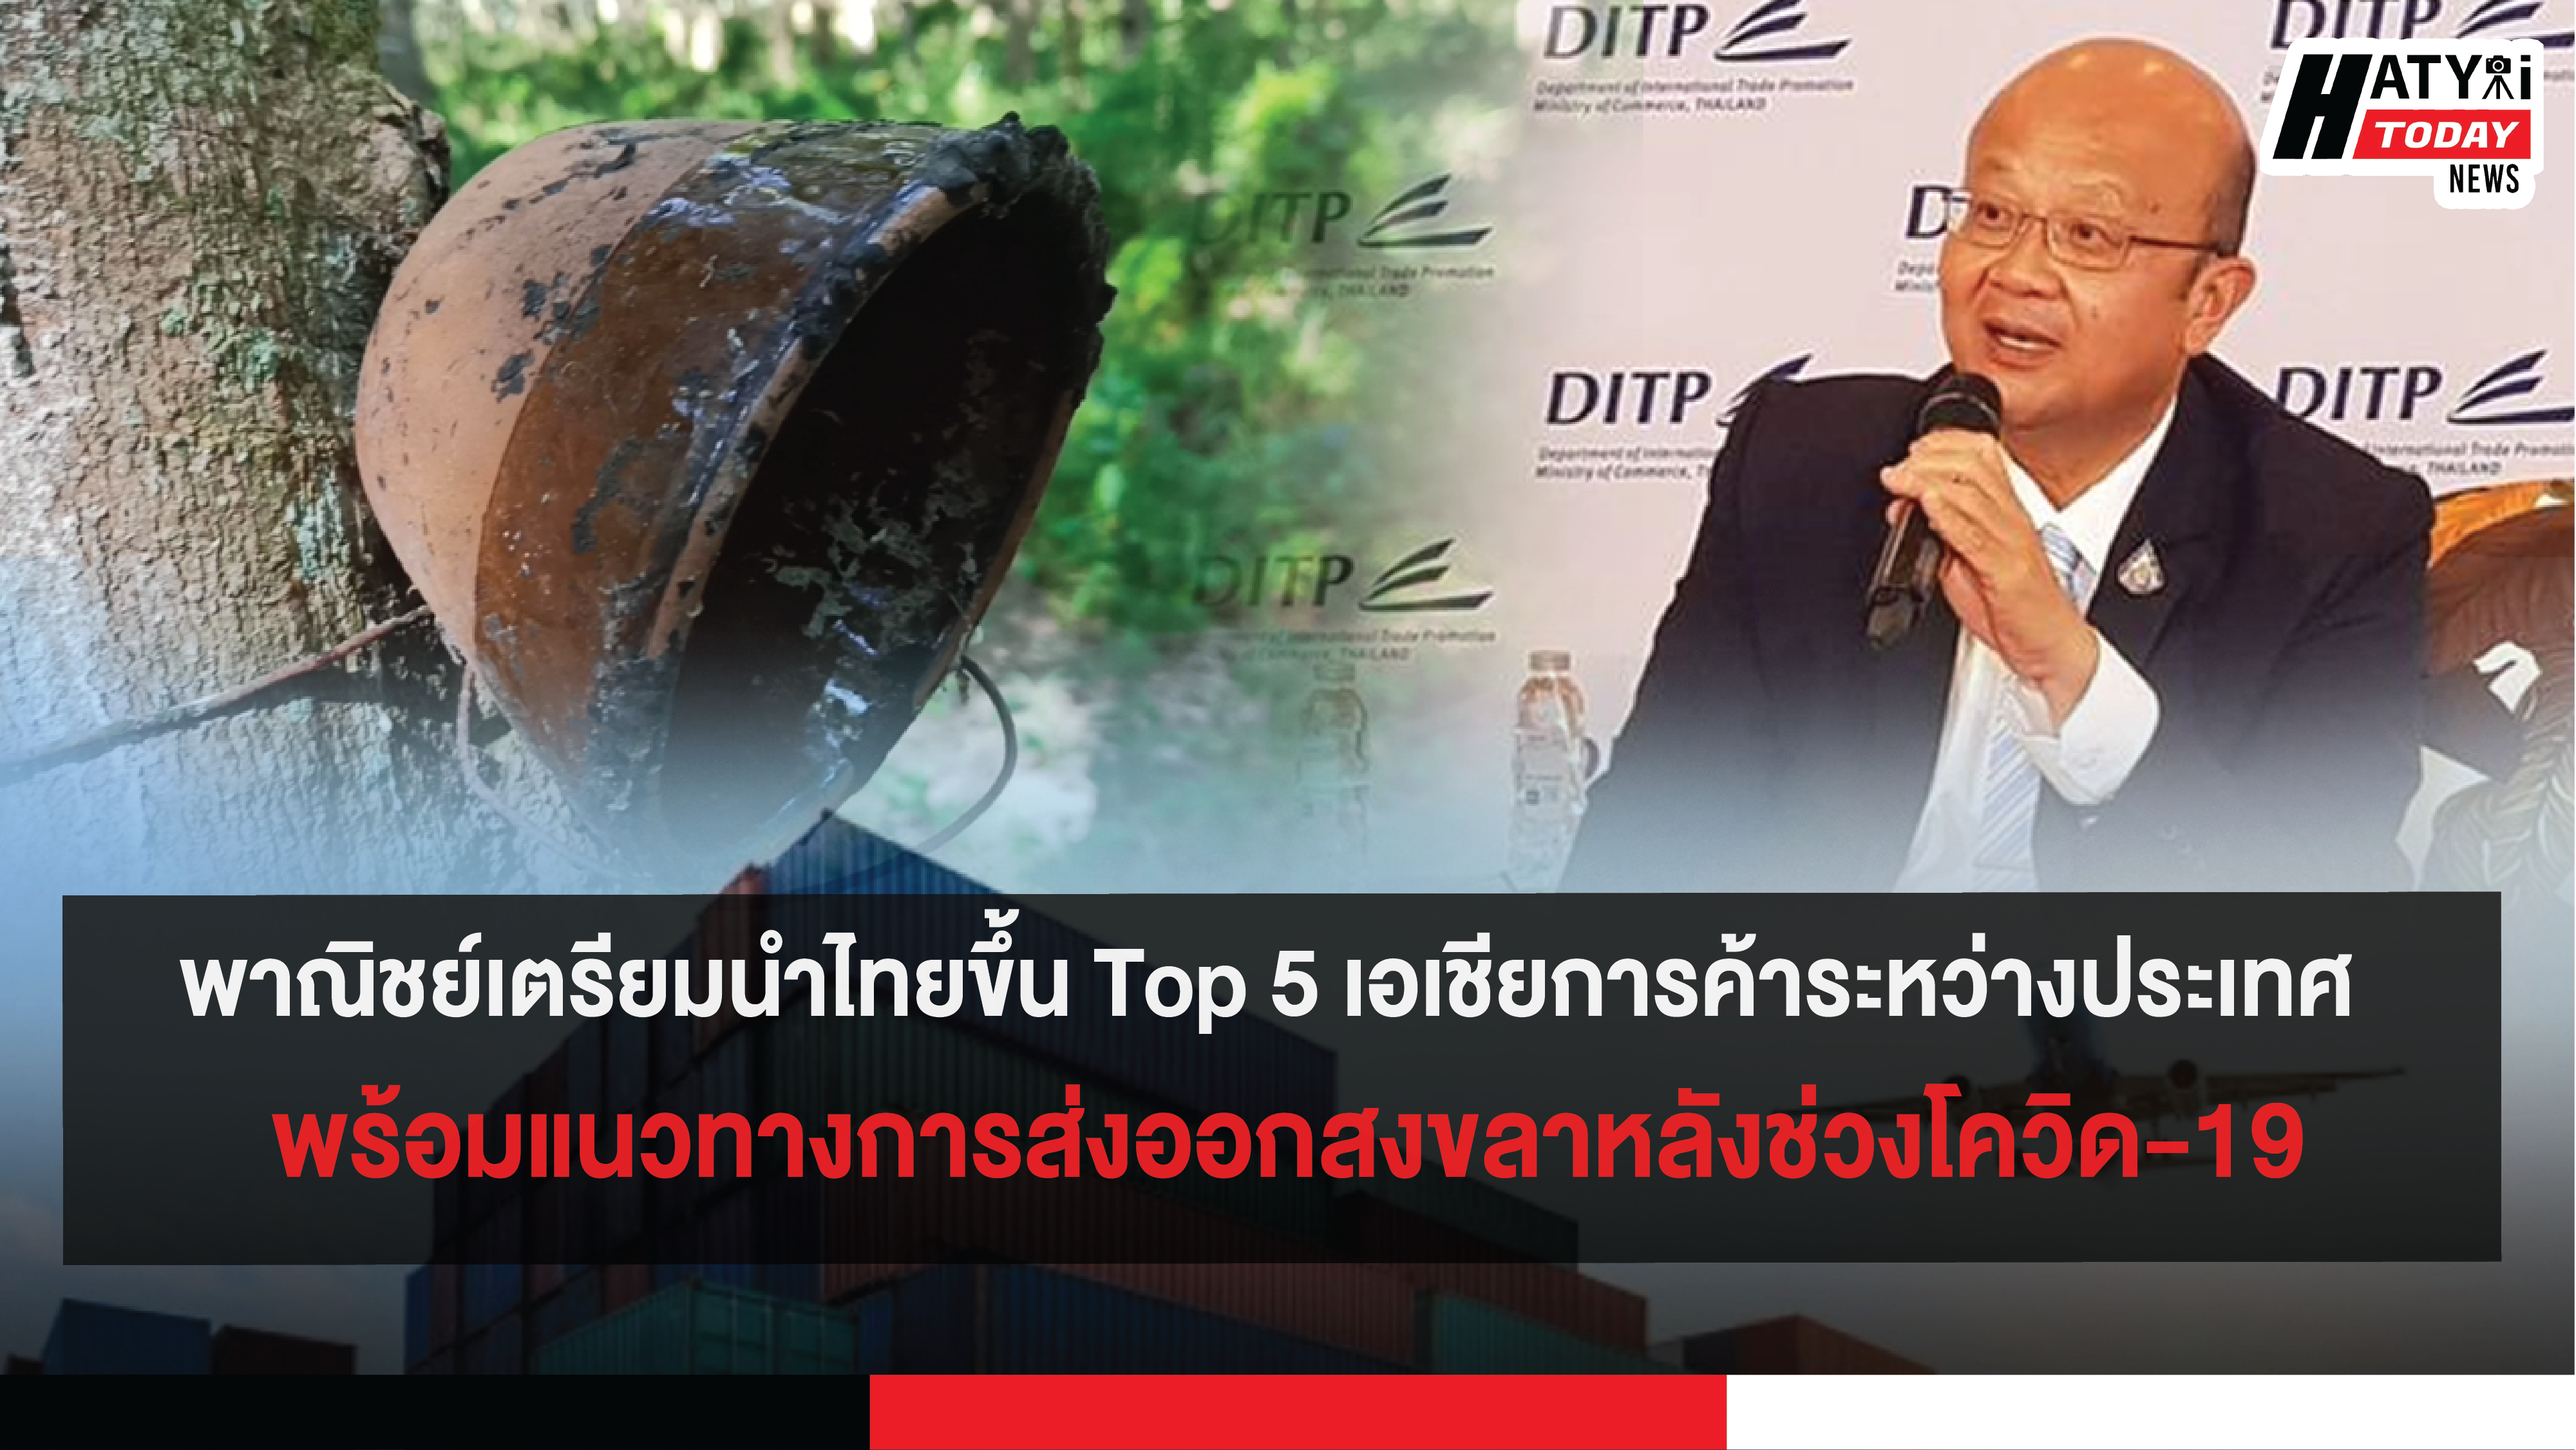 พาณิชย์เตรียมนำไทยขึ้น Top 5 เอเชียการค้าระหว่างประเทศ  พร้อมแนวทางการส่งออกสงขลาหลังช่วงโควิด-19